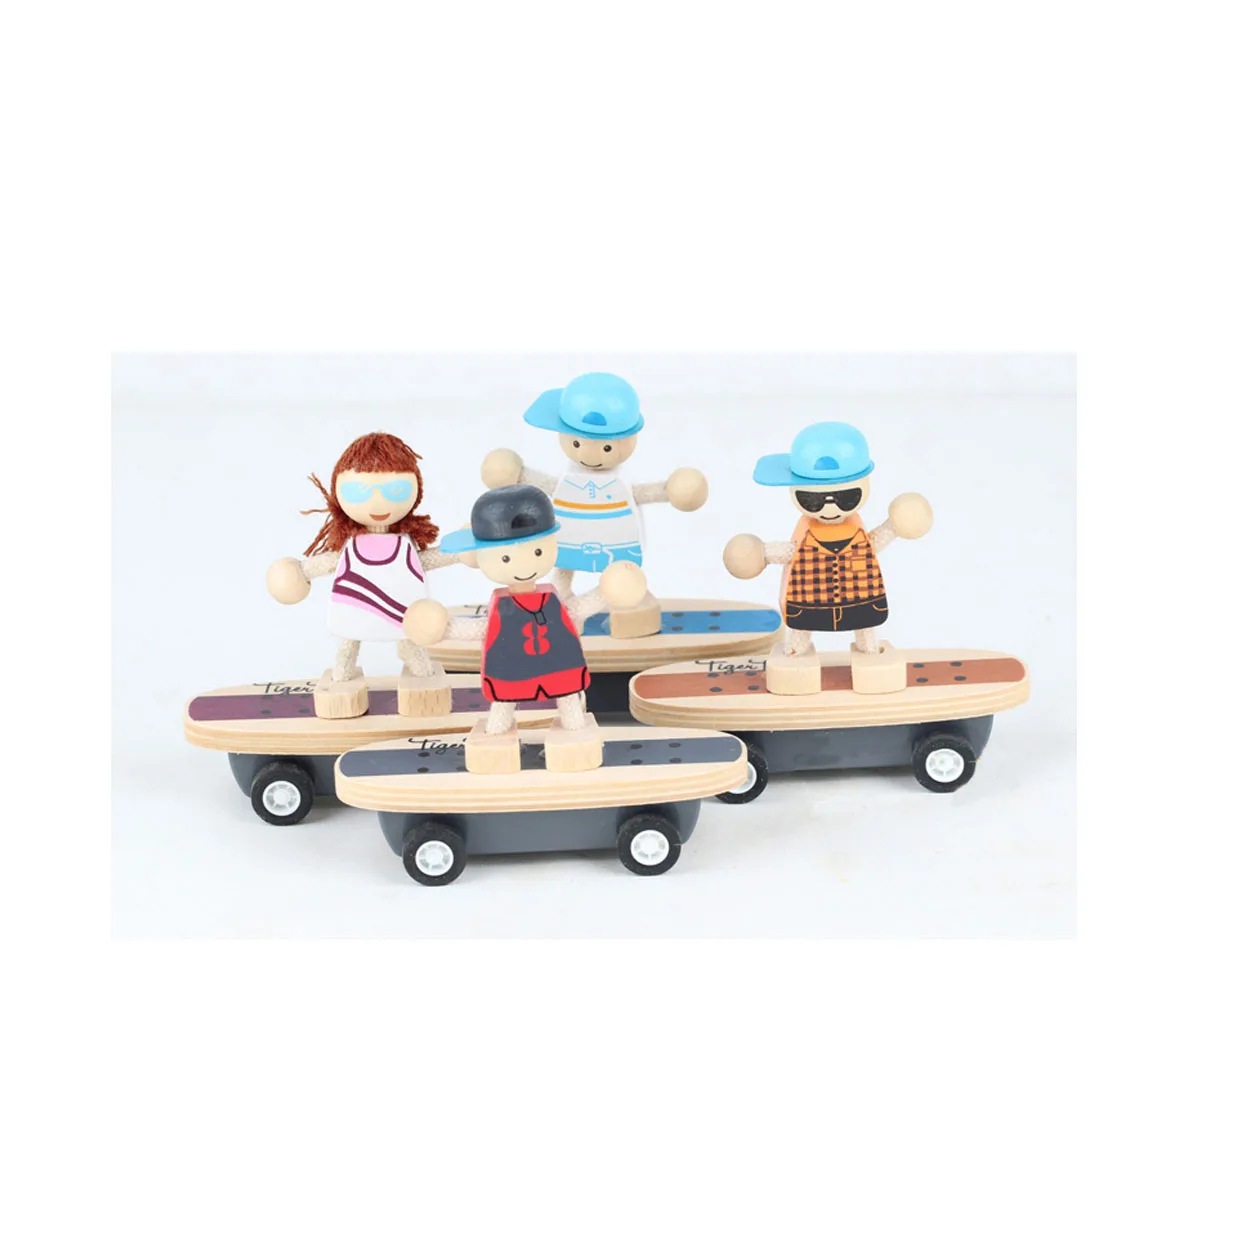 Chanycore новинка поступление игрушка 1 шт. милый детский комбинезон с рисунком из зоопарка; одежда для малышей с изображениями персонажей мультфильма Автомобильная пружина игрушка; развивающая игрушка Детские игрушки при доставке выбираются произвольно 5131